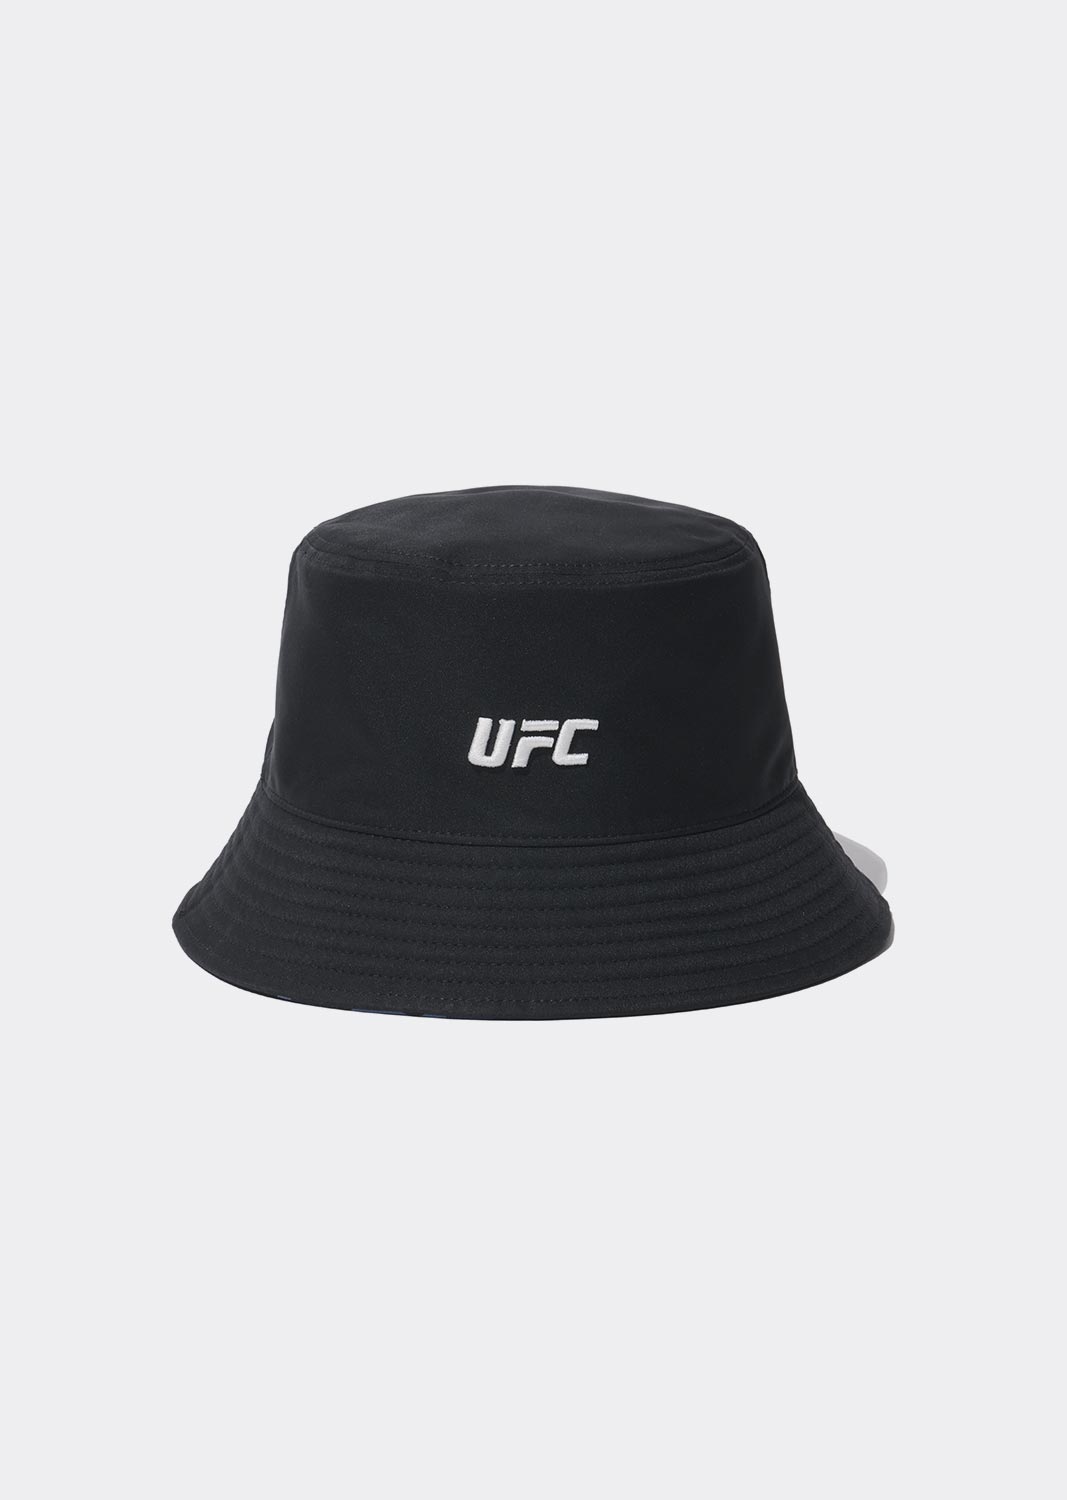 UFC 카모 리버시블 버킷햇 블랙 U2HWU1343BK